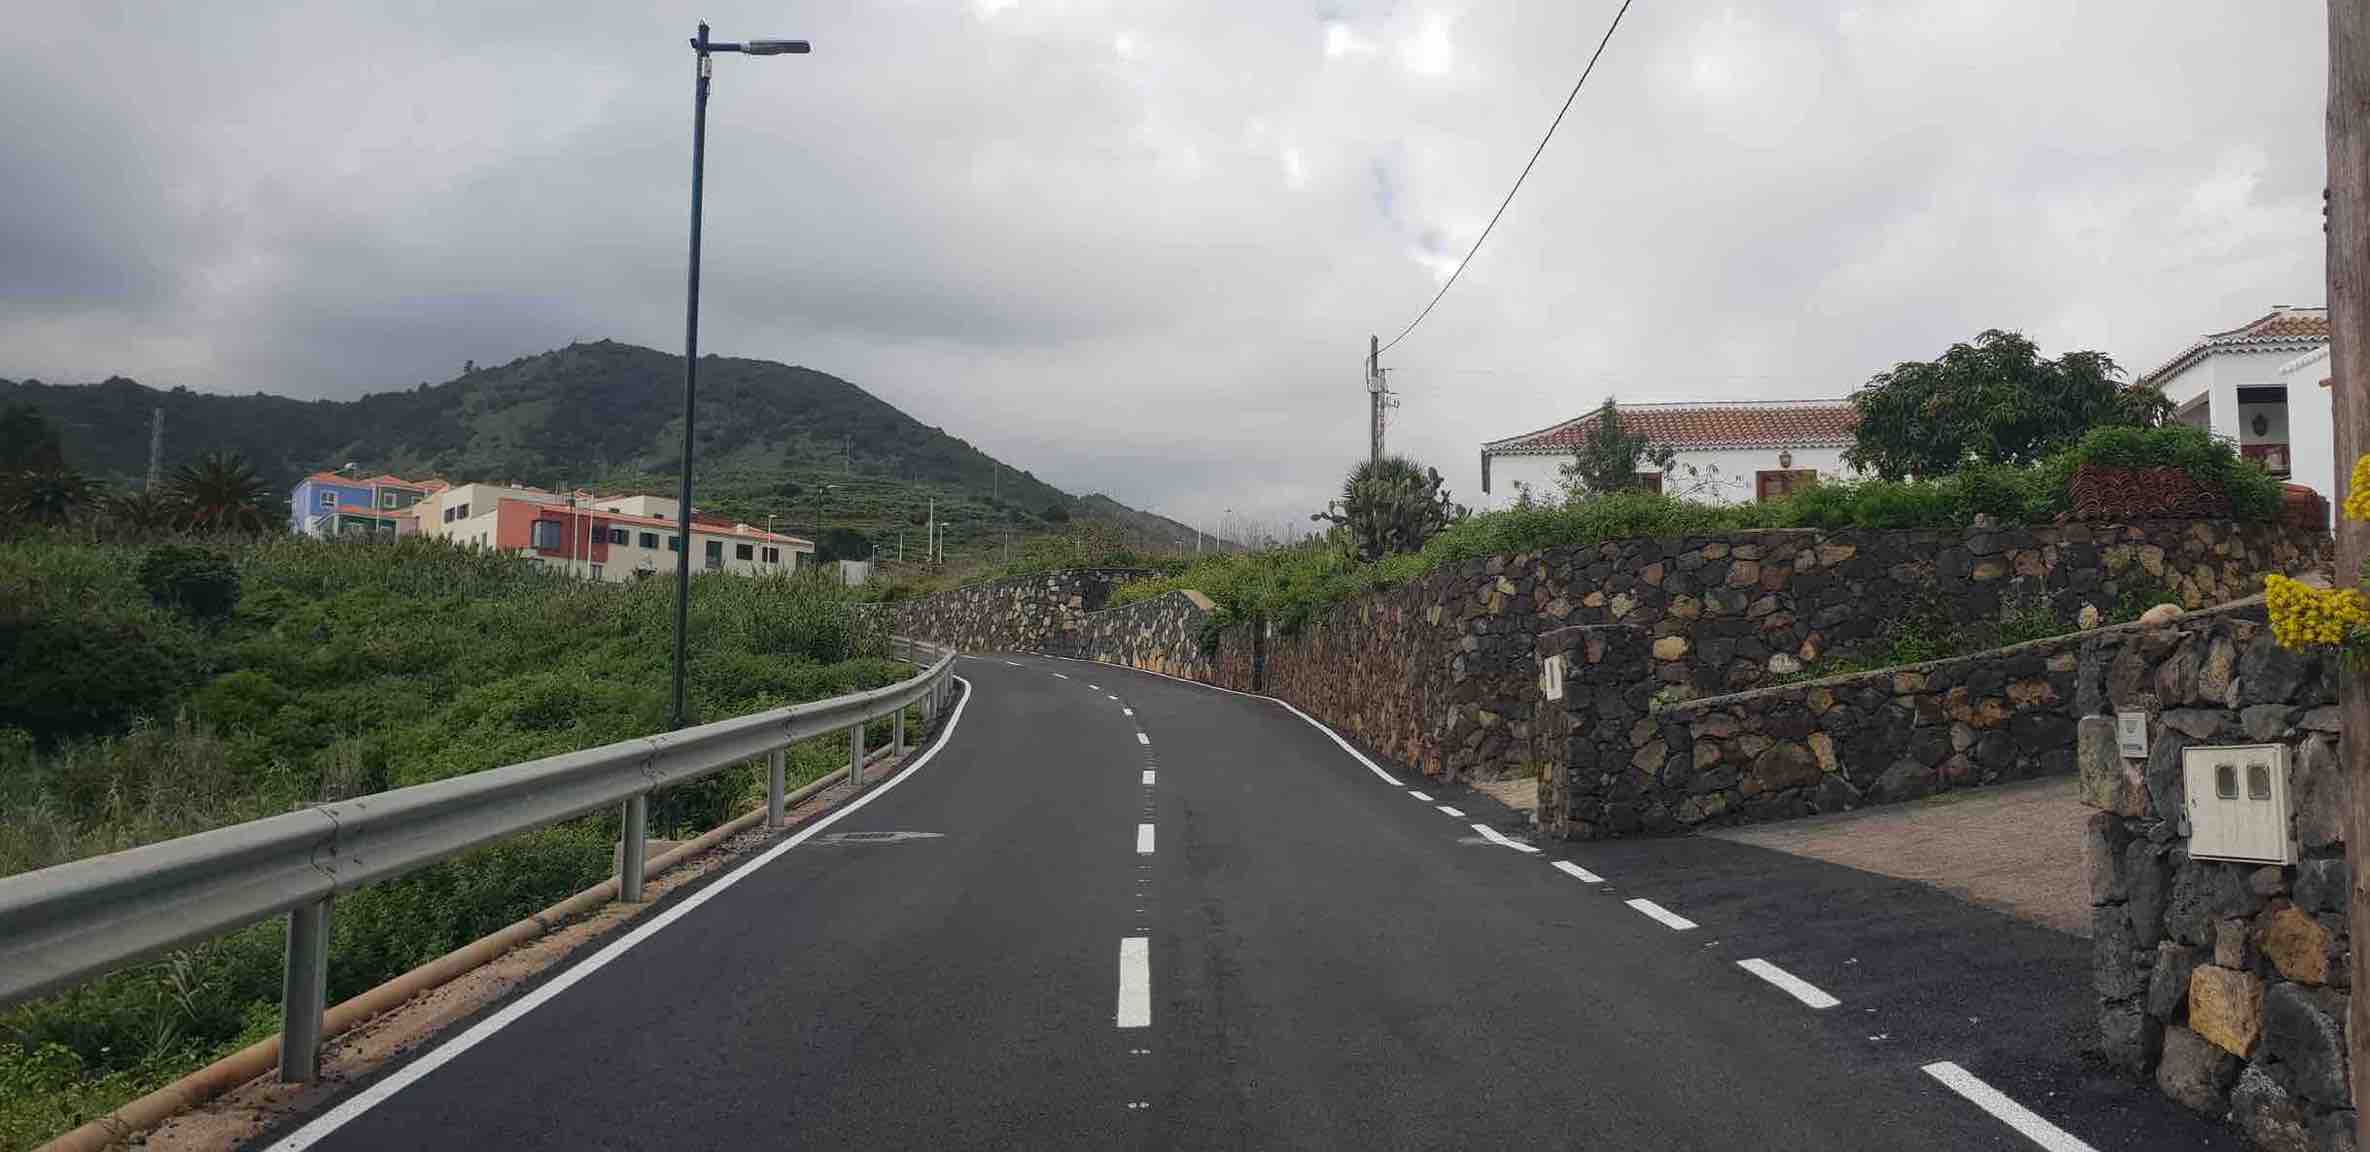 Puntallana culmina el asfaltado de varias vías municipales por importe de 143.034,90€